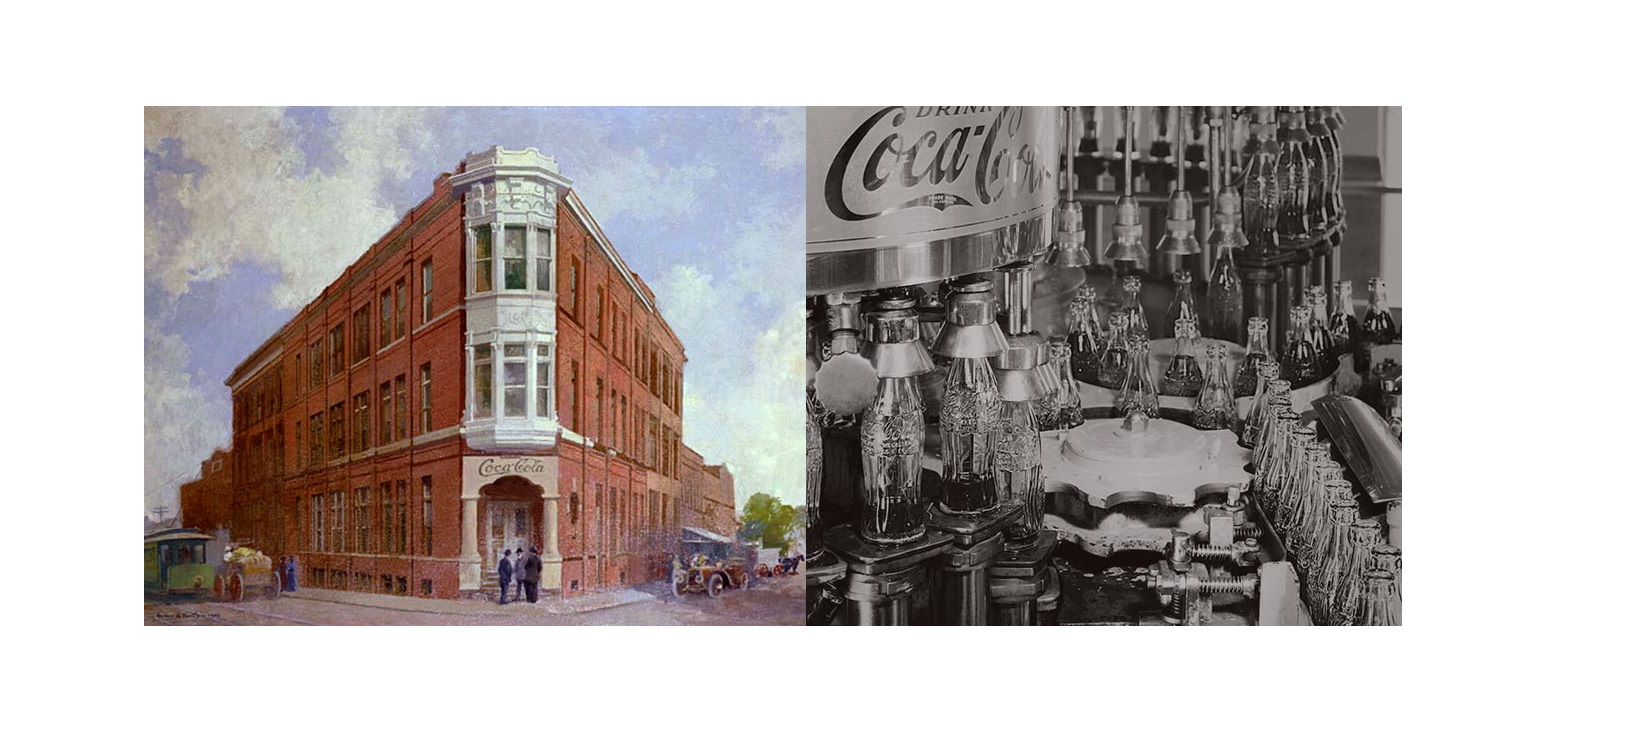 coca-cola, Madrid, 1890-1930, programapublicidad